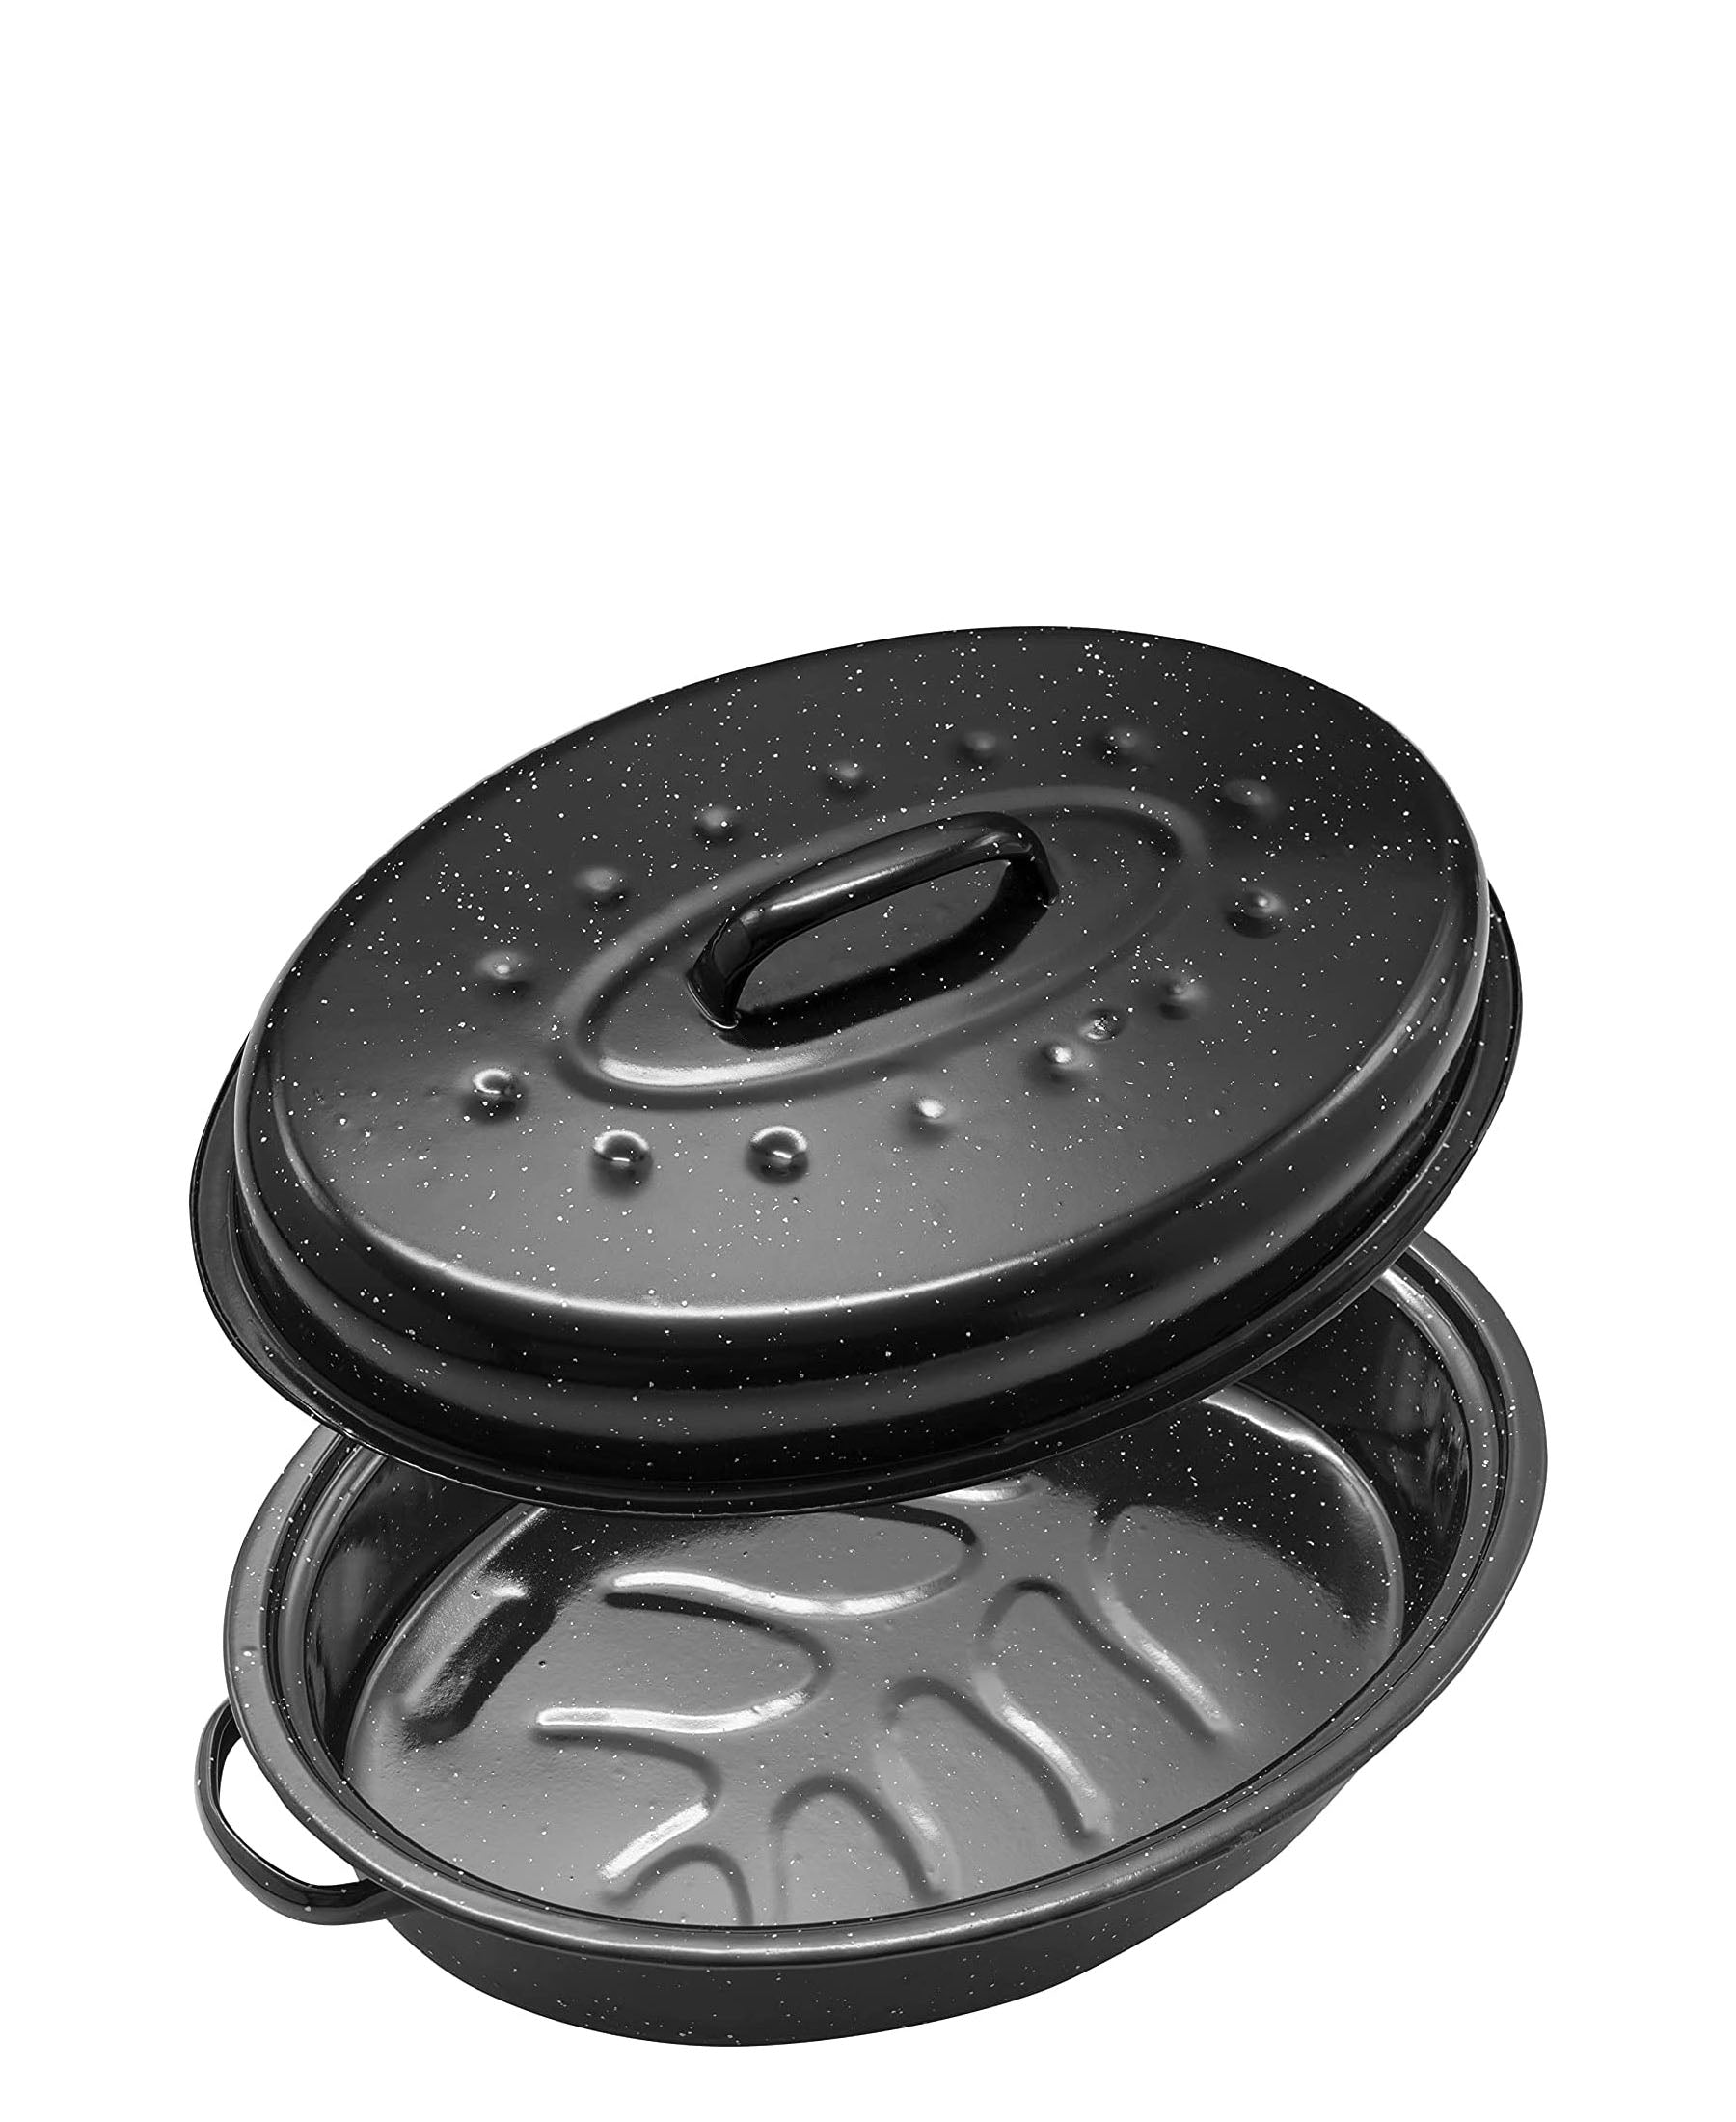 O2 Medium Oval Roaster With Lid - Black